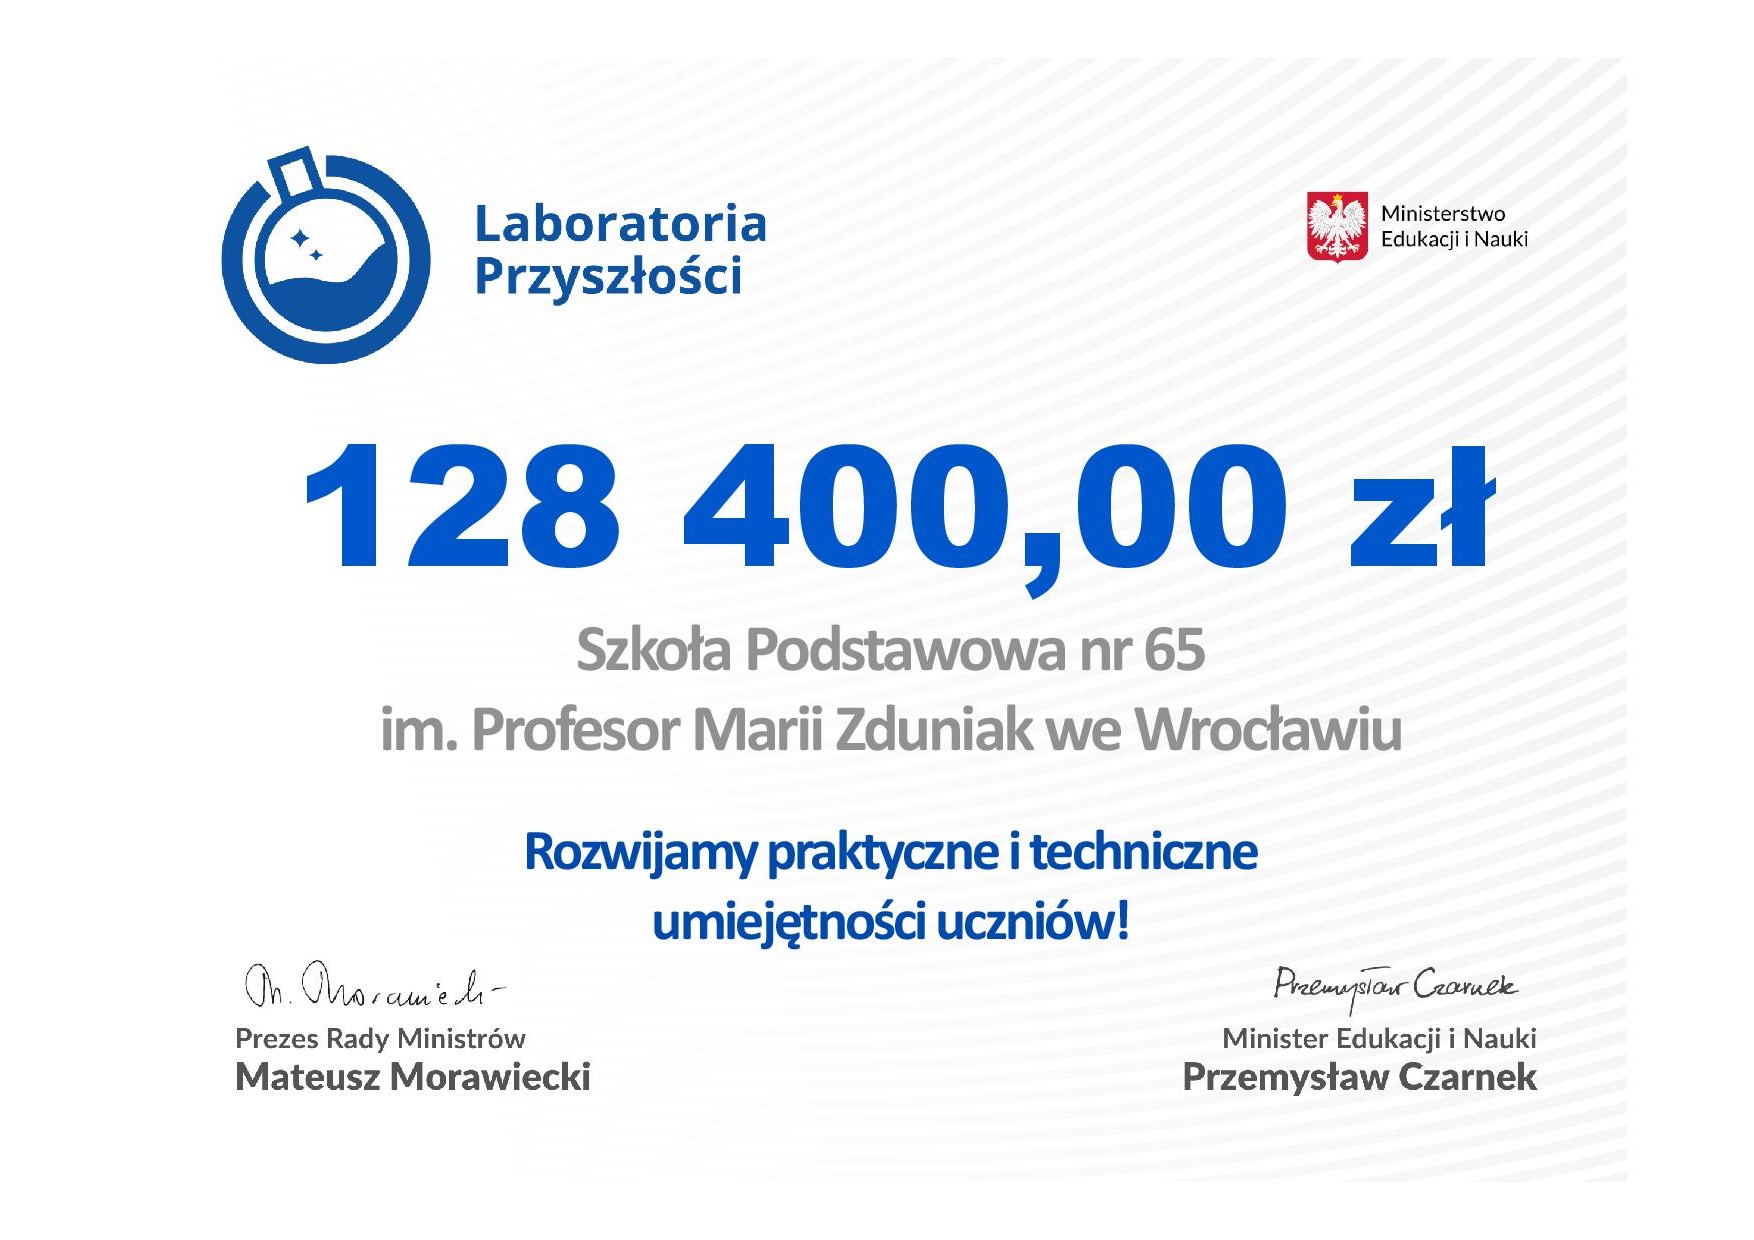 Czek_-_Laboratoria_Przyszlosci_-_SP_65_RSPO_-_21677.jpg